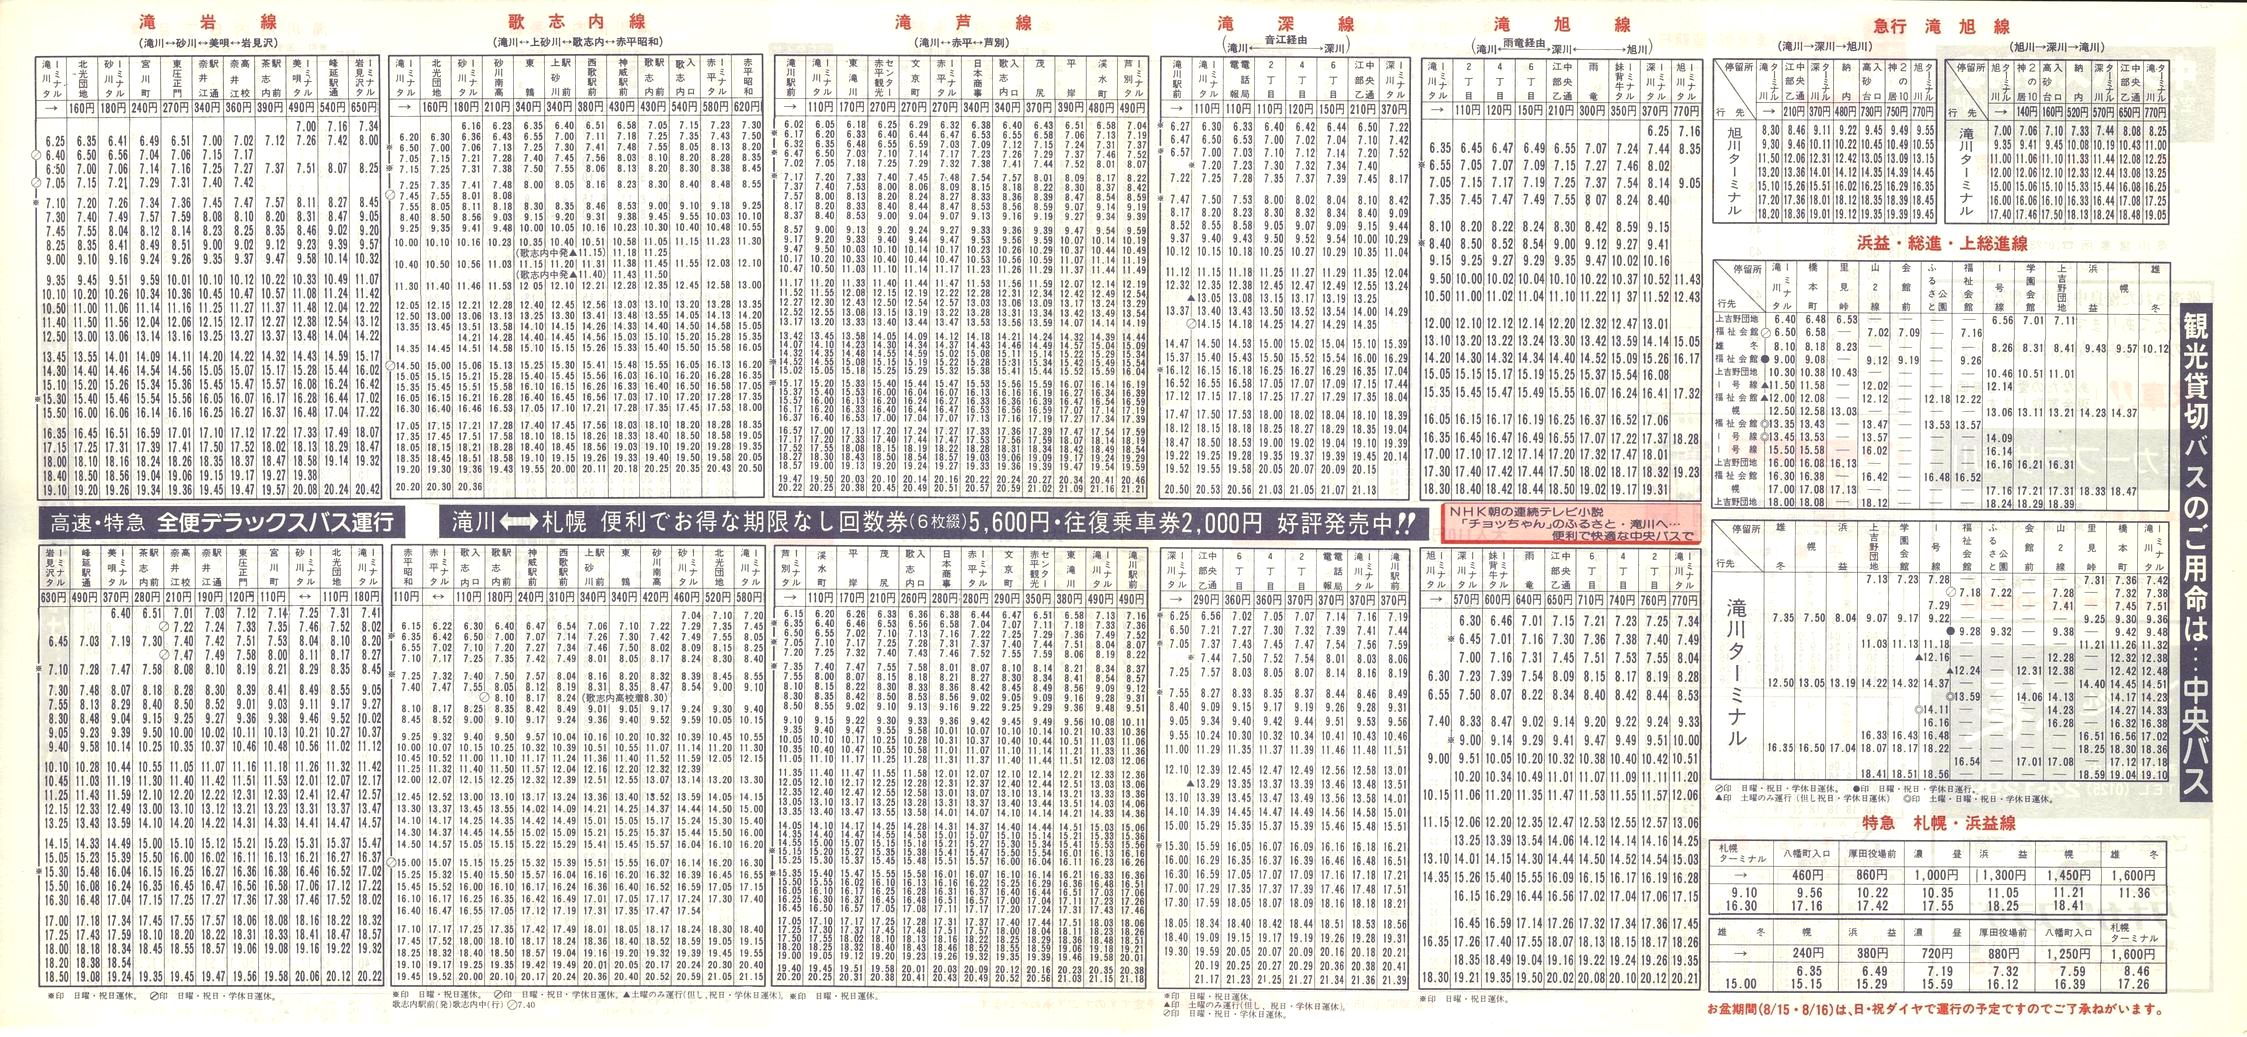 1987-04-10改正_北海道中央バス(空知)_滝川管内線時刻表裏面